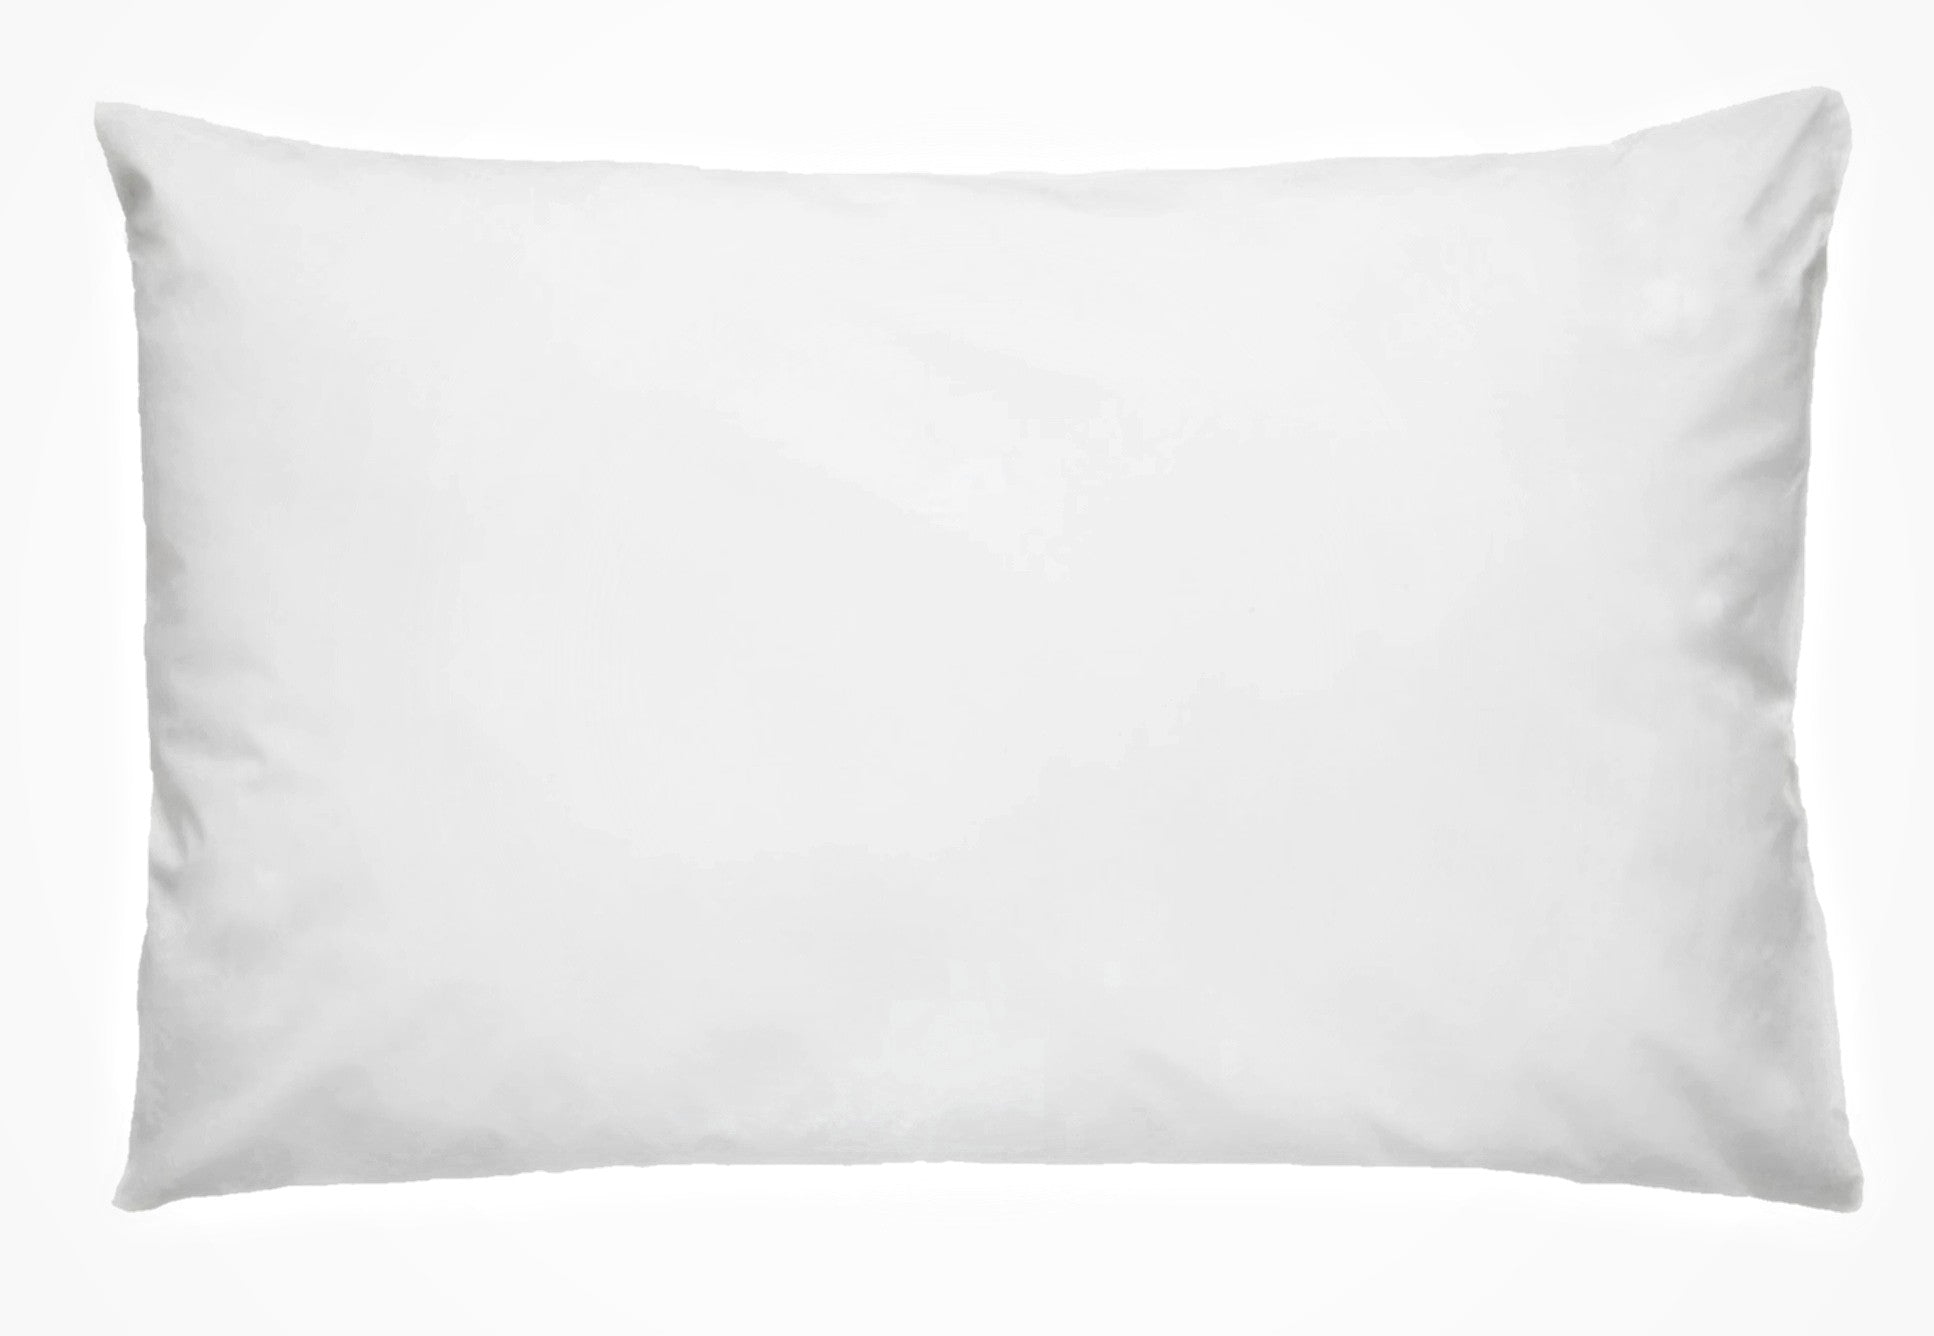 Baavet pure wool 700g soft pillow